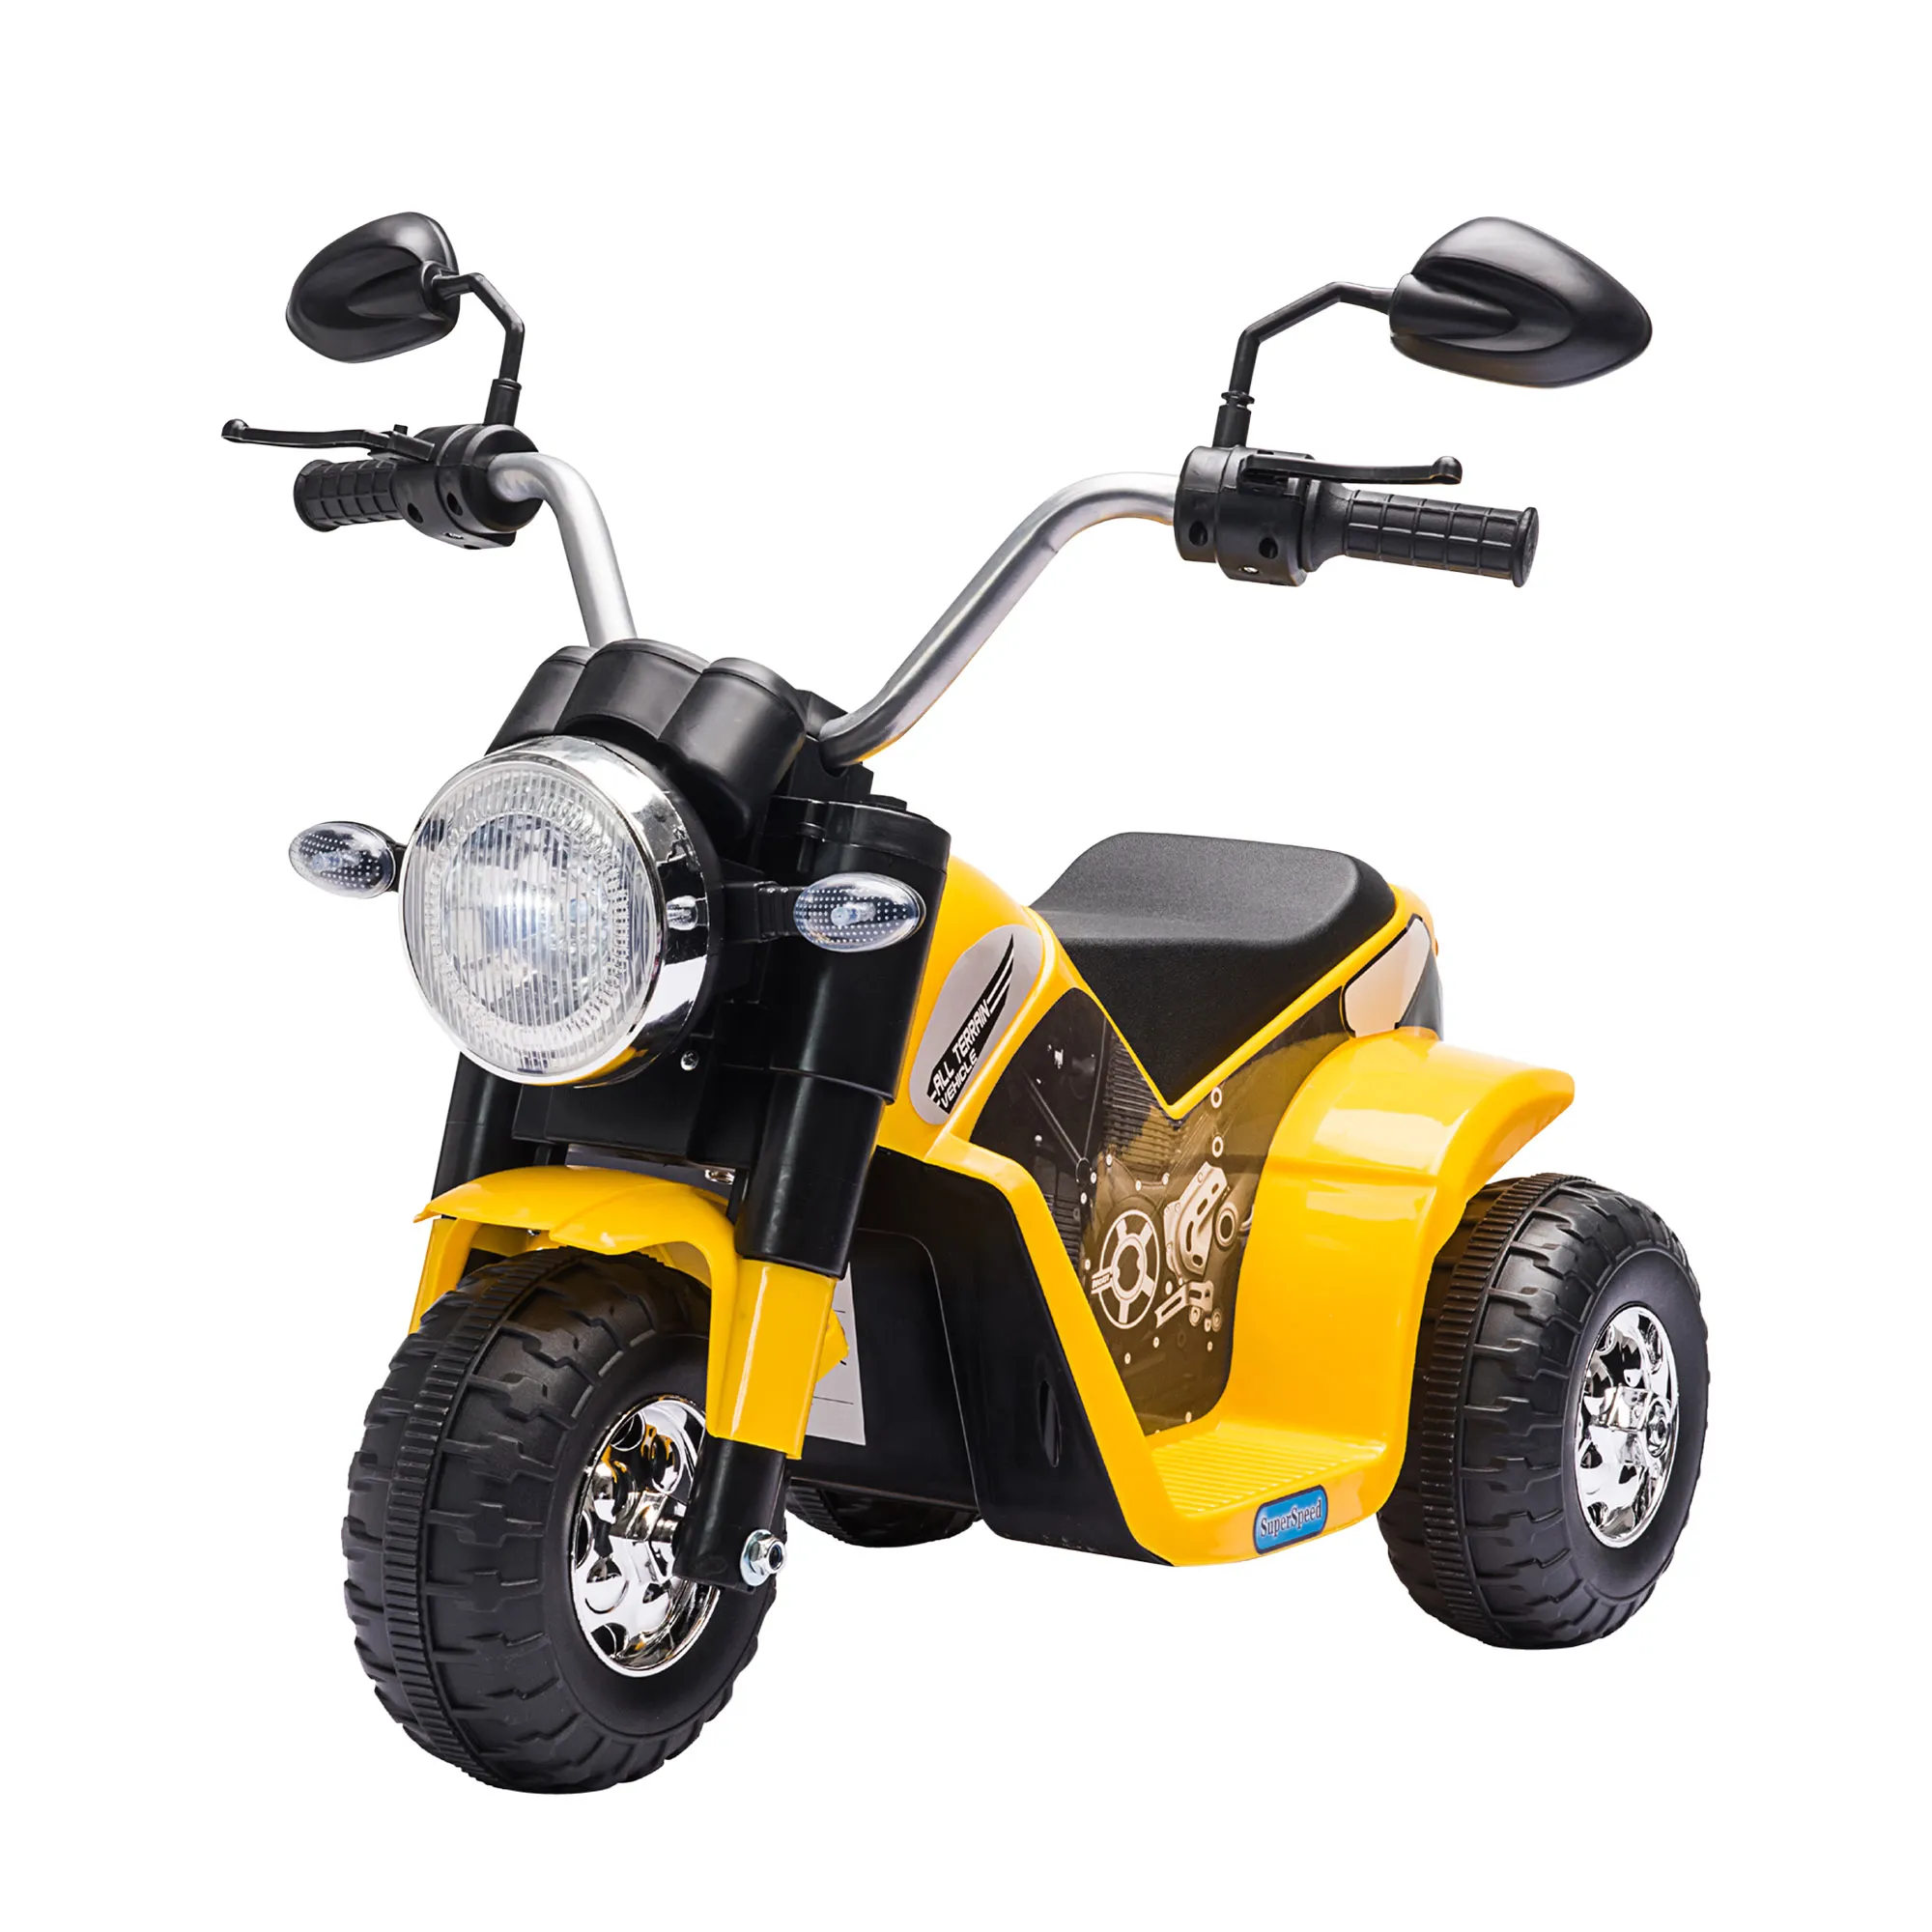  Moto Elettrica per Bambini a 3 Ruote con Luci e Suoni, Batteria Ricaricabile 6V, Velocità 2 km/h, per Bimbi da 18-36 Mesi, Gialla